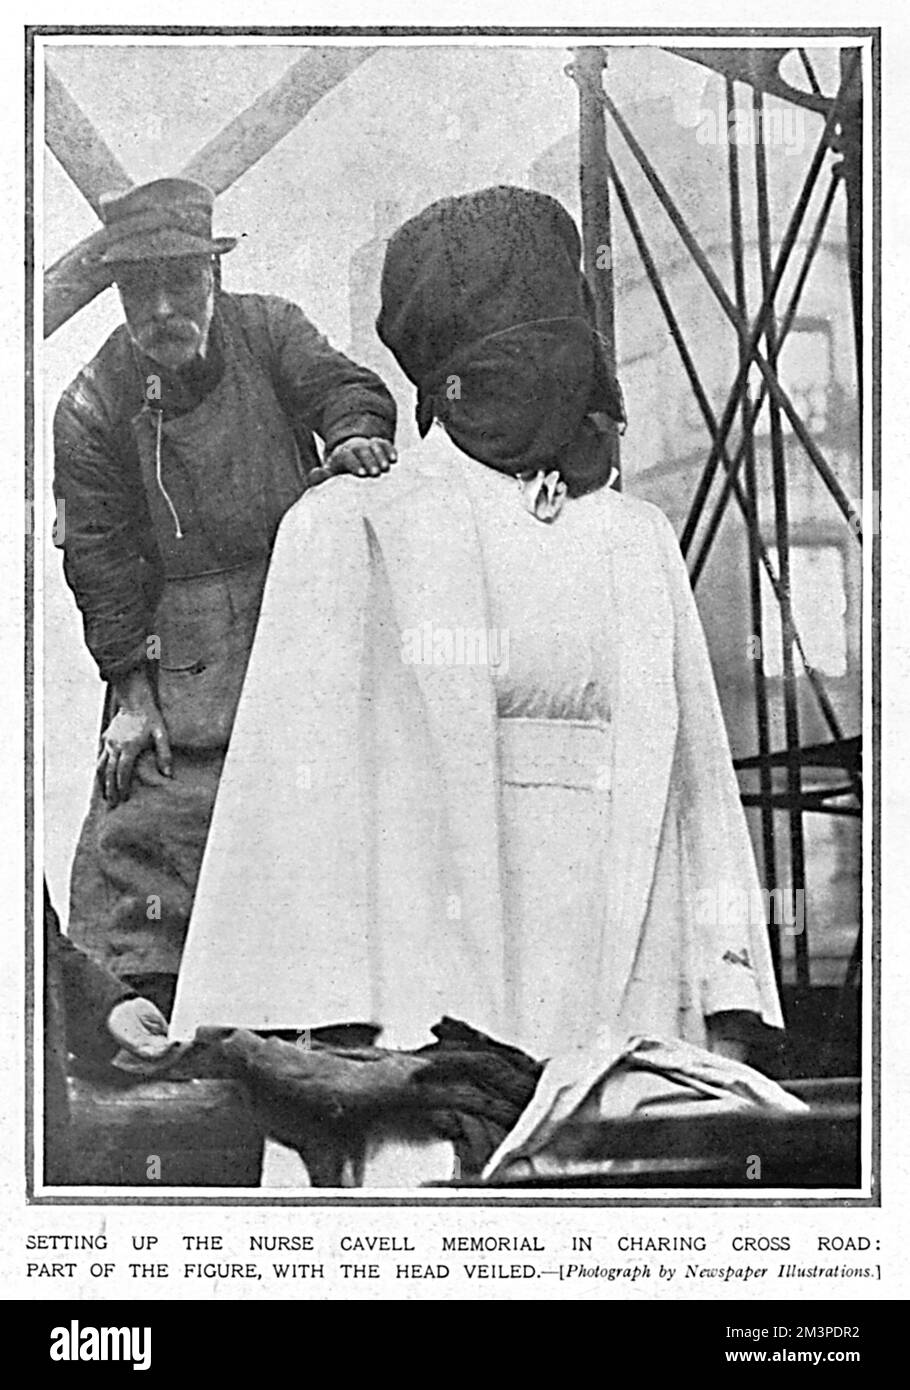 Bildhauer Sir George Frampton, auf dem Bild, wie er das Krankenschwester Edith Cavell Denkmal in der Charing Cross Road aufbaut. Er posiert mit einem Teil der Figuren, sein Kopf verschleiert. Edith Cavell war eine britische Krankenschwester, die im August 1915 von den Deutschen verhaftet wurde, weil sie 200 alliierten Soldaten bei der Flucht in die Niederlande geholfen haben. Sie wurde am 12. 1915. Oktober hingerichtet. Die Gedenkstätte wurde von Königin Alexandra am 17. März 1920 enthüllt. Datum: 1920 Stockfoto